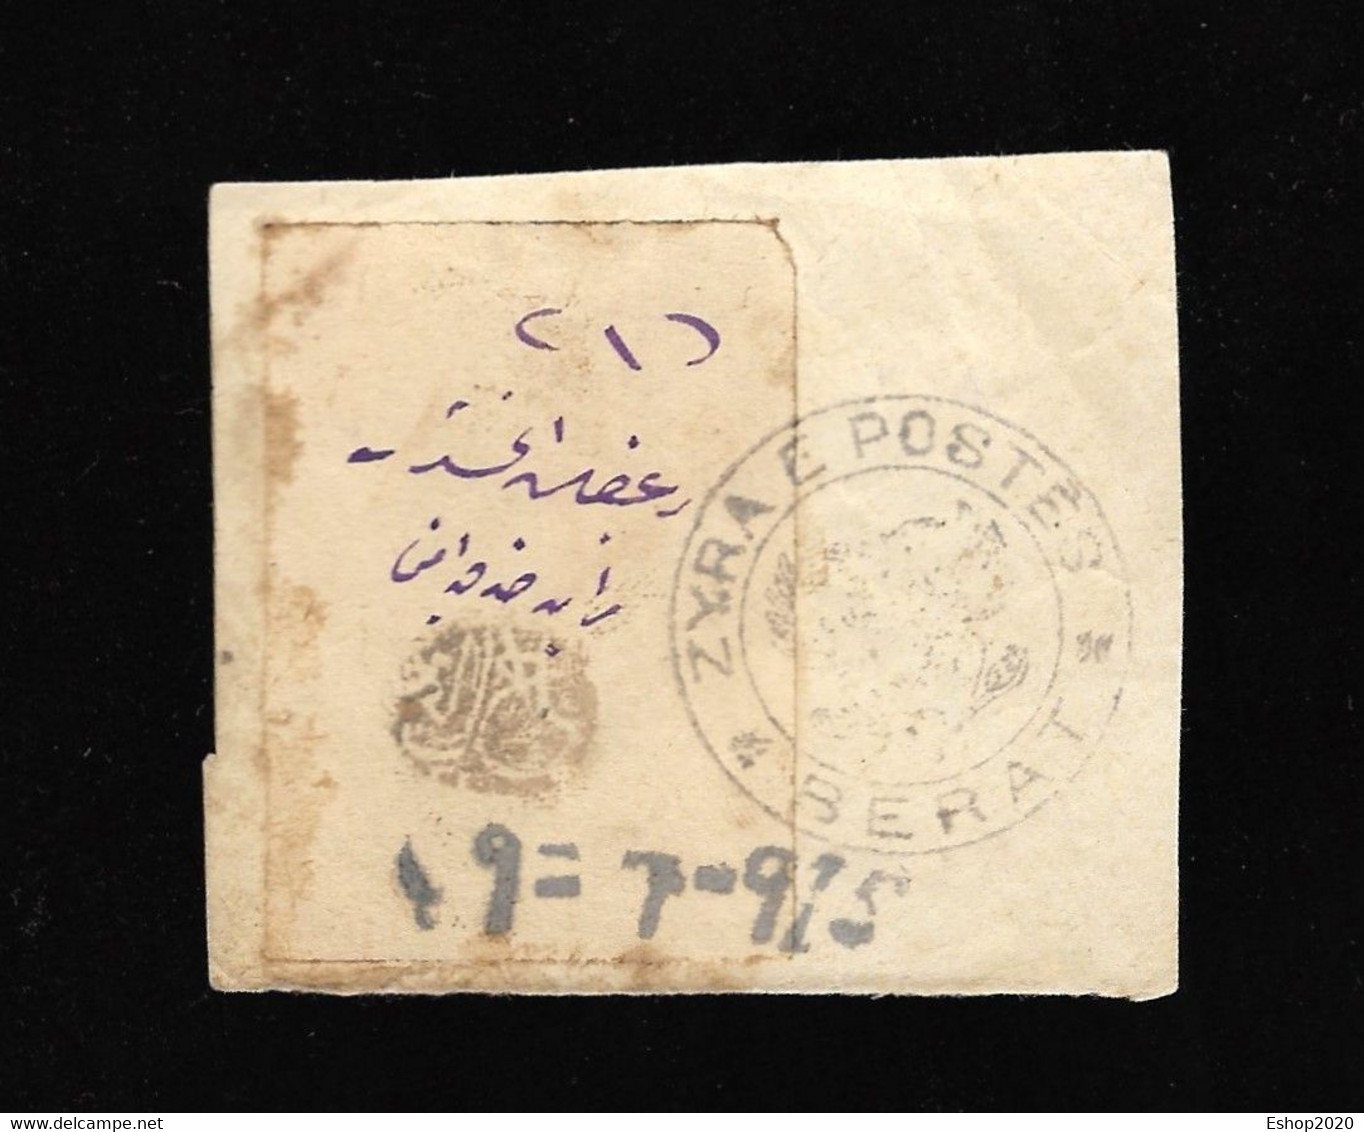 Stamps Albania Zyra E Postes Berat Year 1915 Extremely Rare Only 150 Pc #02 - Albania